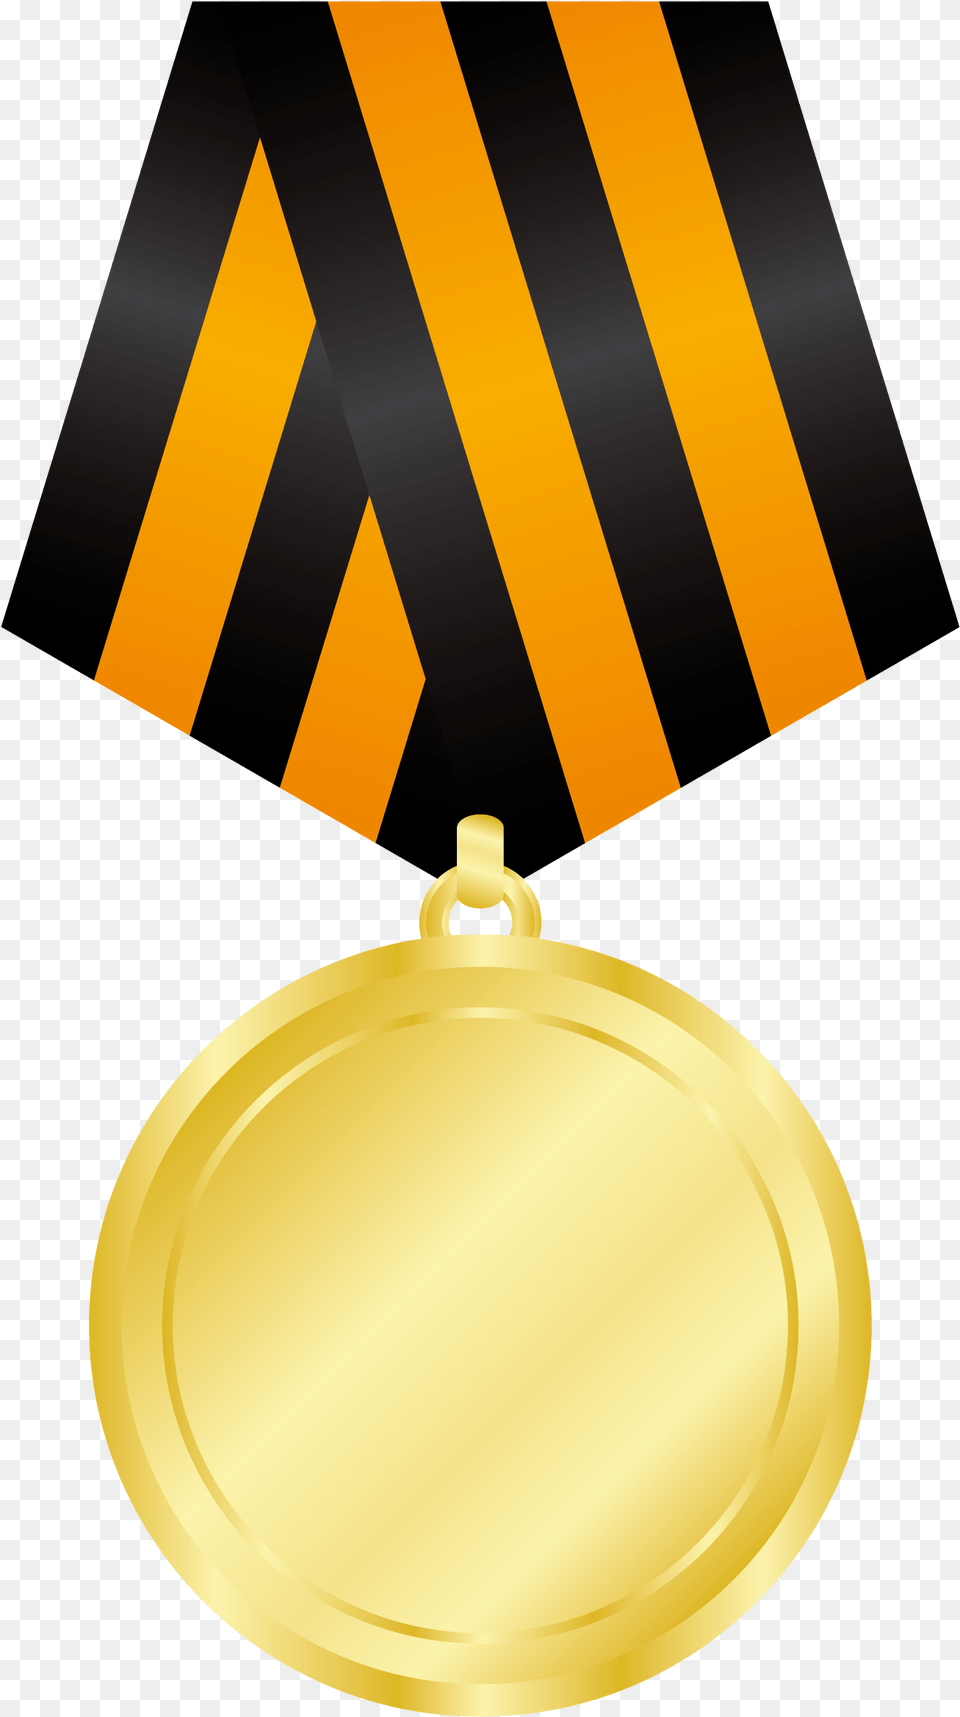 Gold Medal Images Star Vector, Gold Medal, Trophy Png